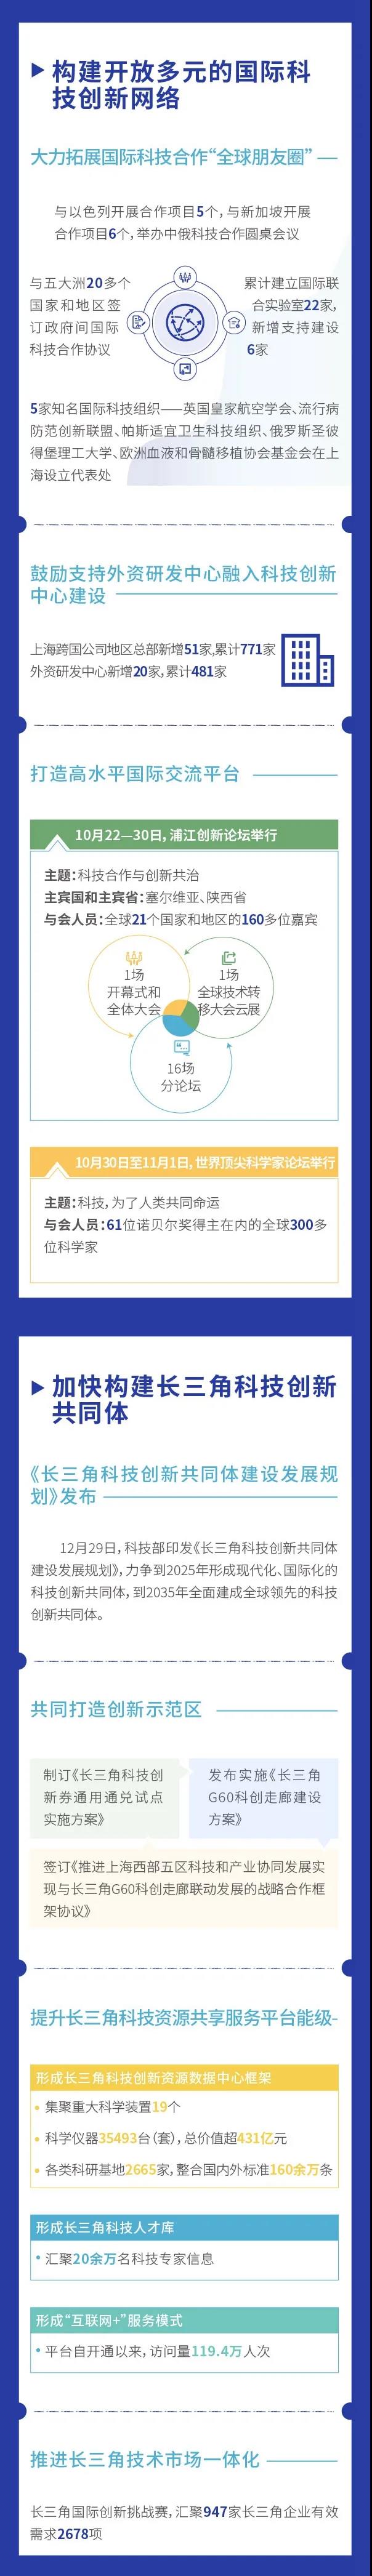 图看《2020上海科技进步报告》④2.jpg